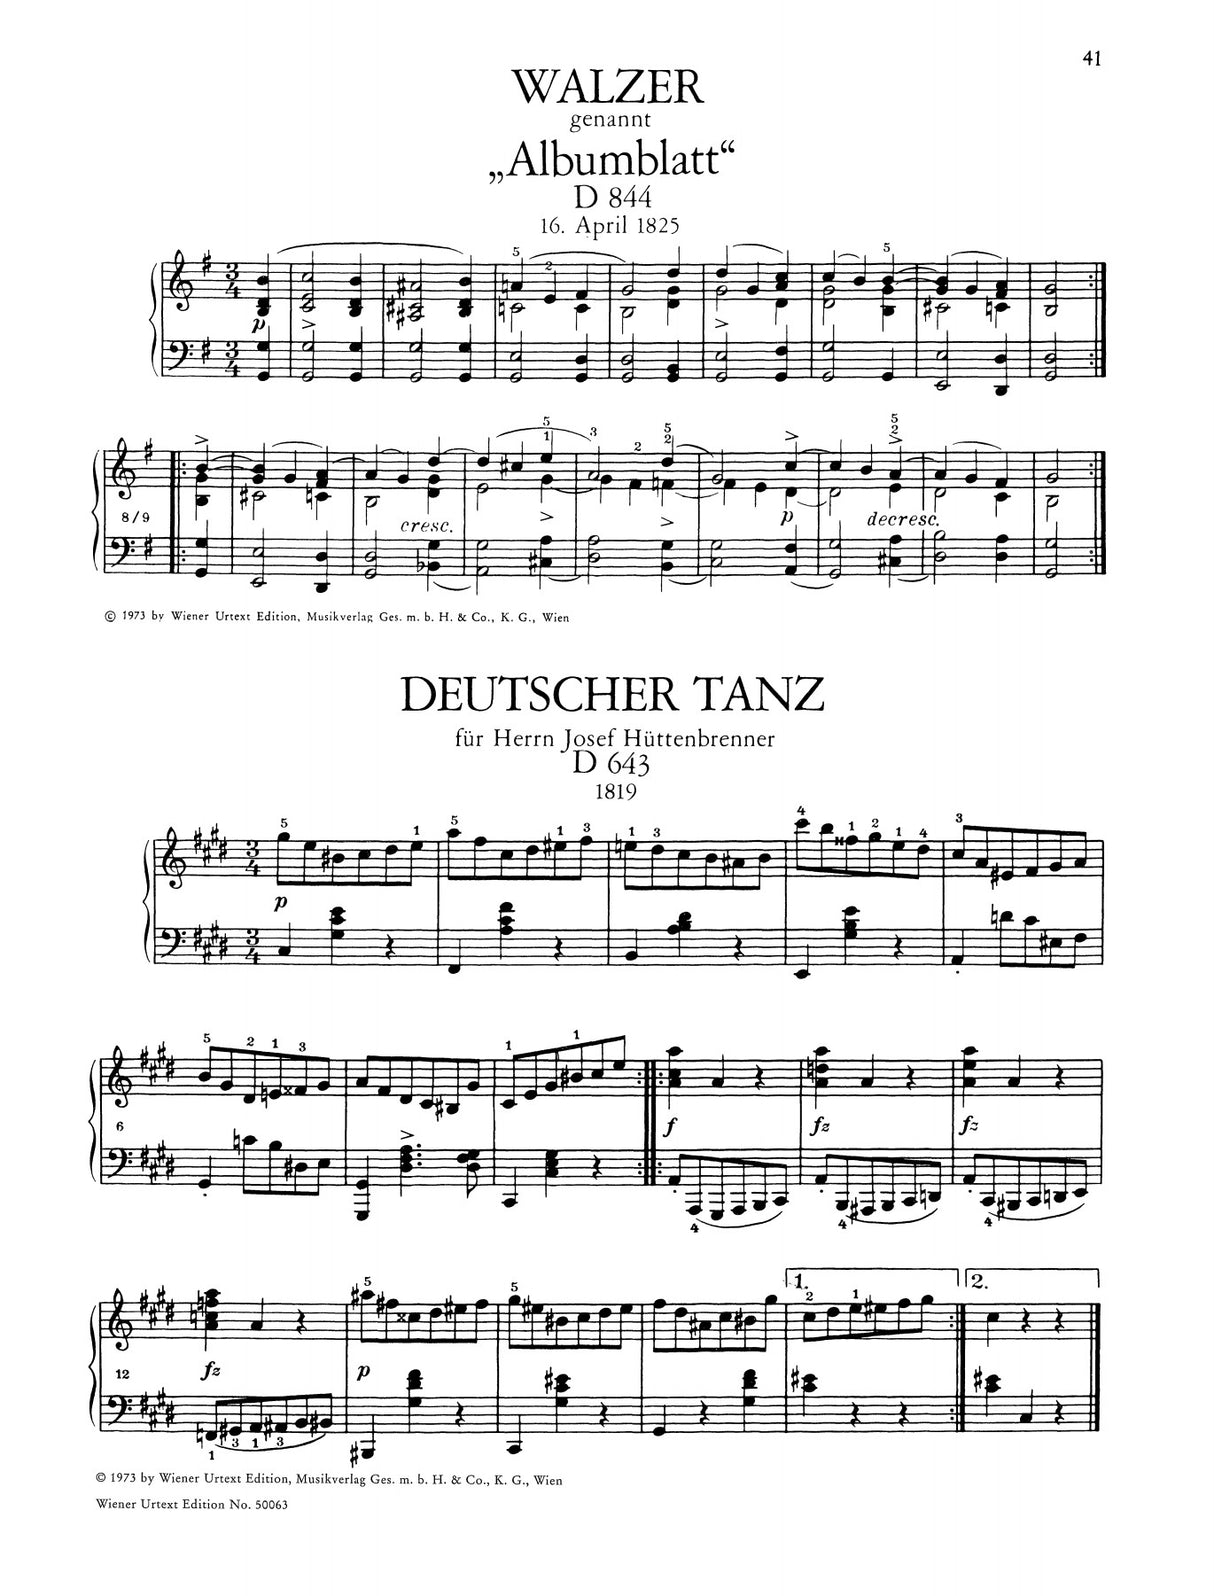 Schubert: Selected Waltzes and German Dances